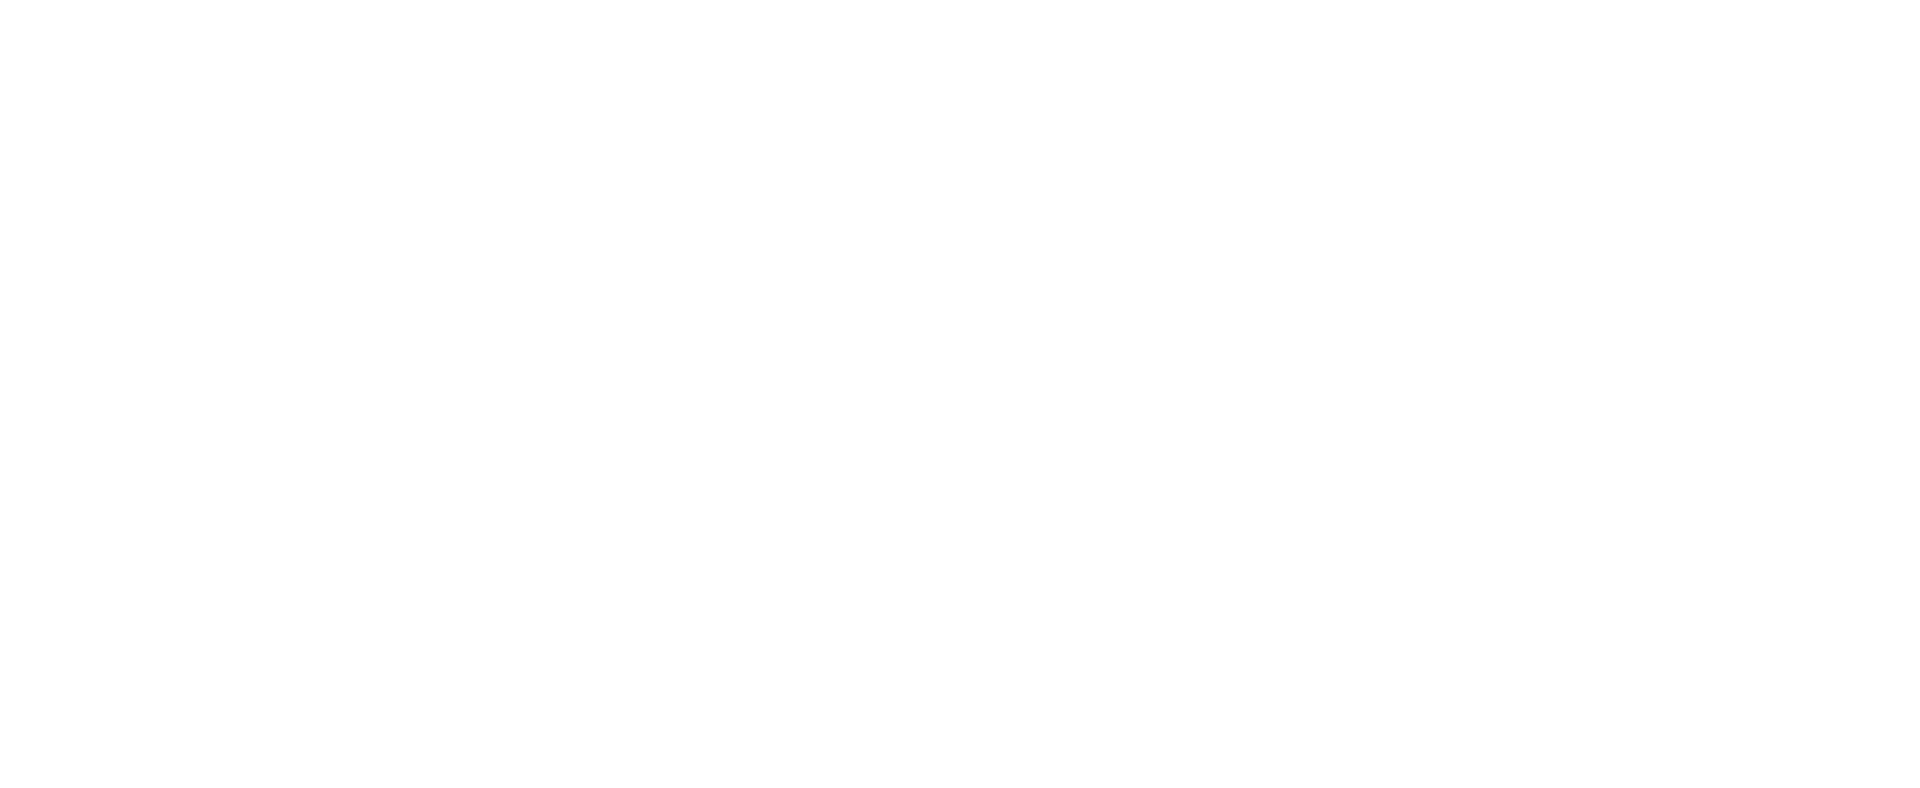 Publink logo